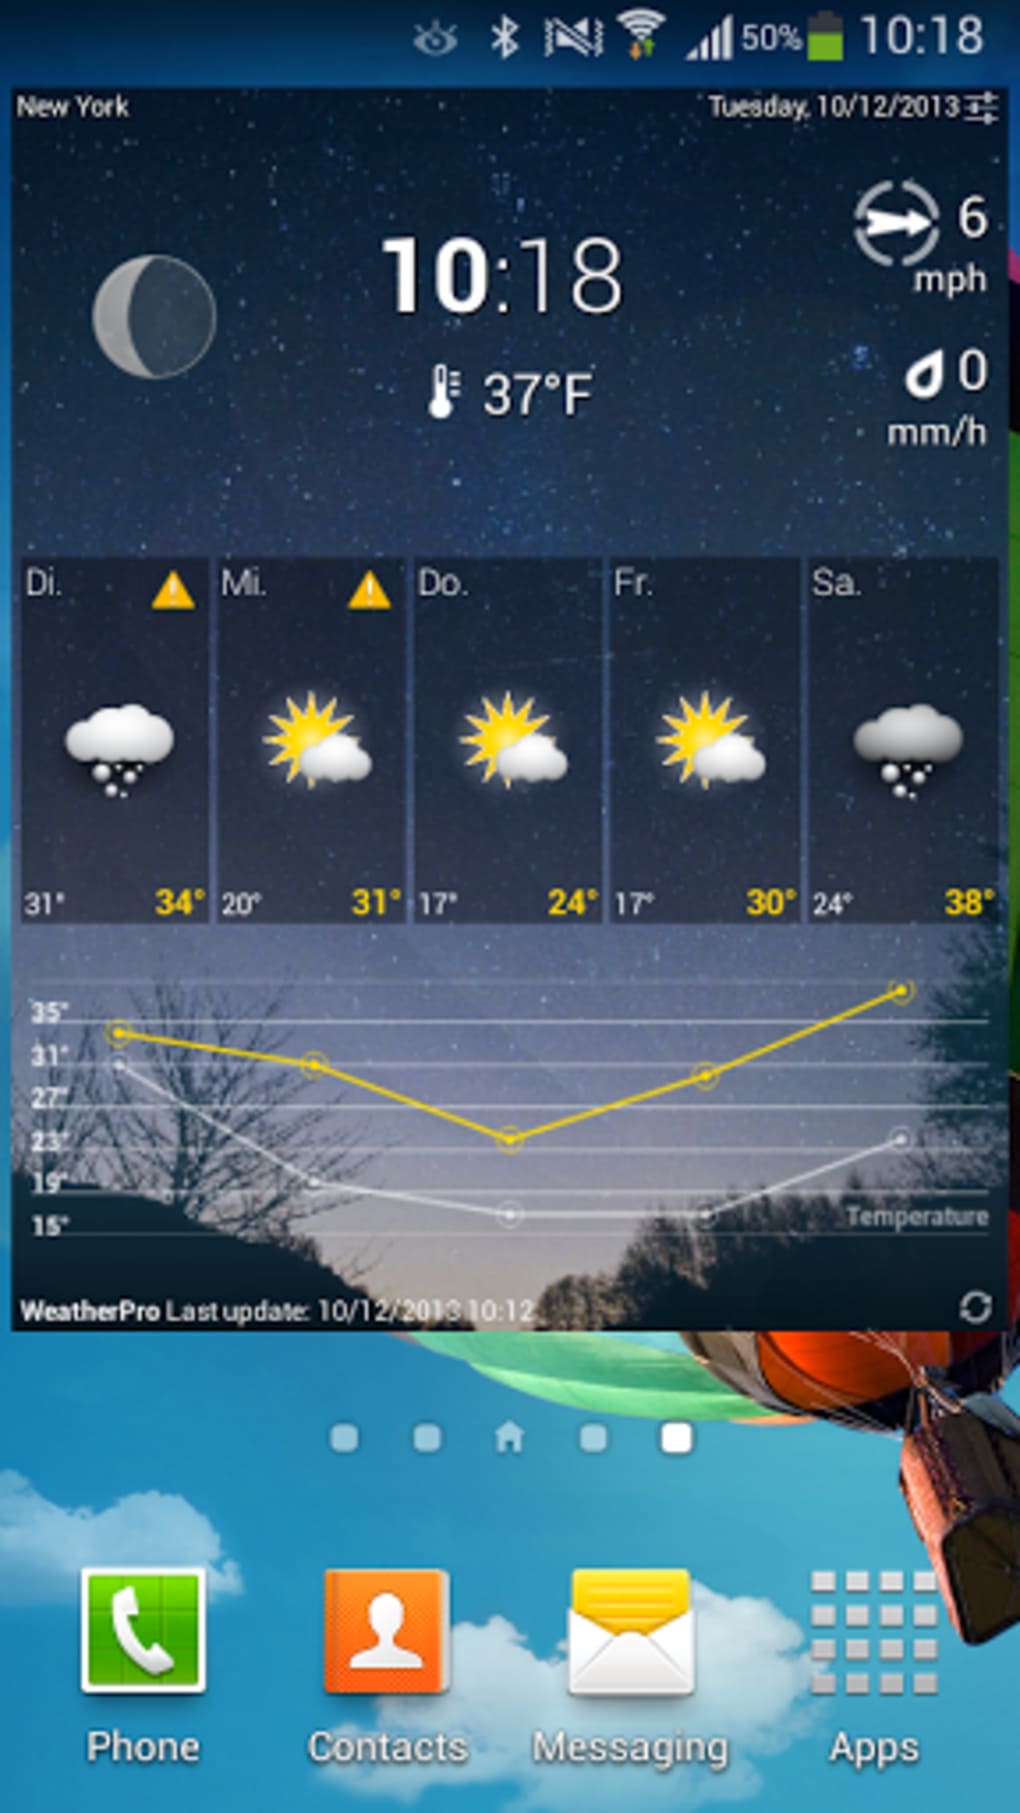 weatherpro app kostenlos